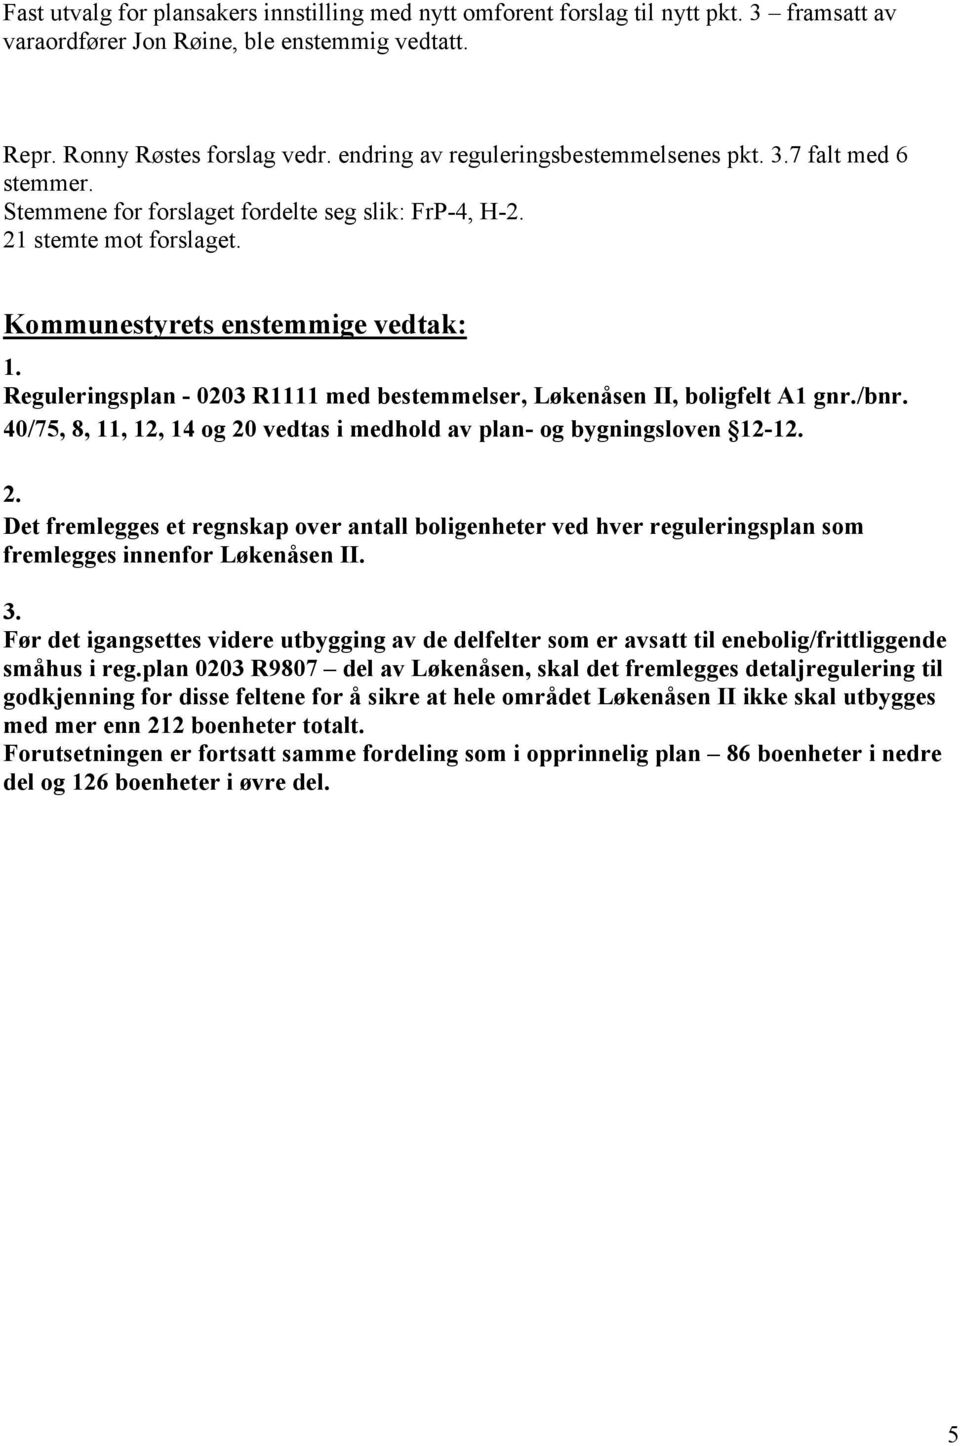 Reguleringsplan - 0203 R1111 med bestemmelser, Løkenåsen II, boligfelt A1 gnr./bnr. 40/75, 8, 11, 12, 14 og 20